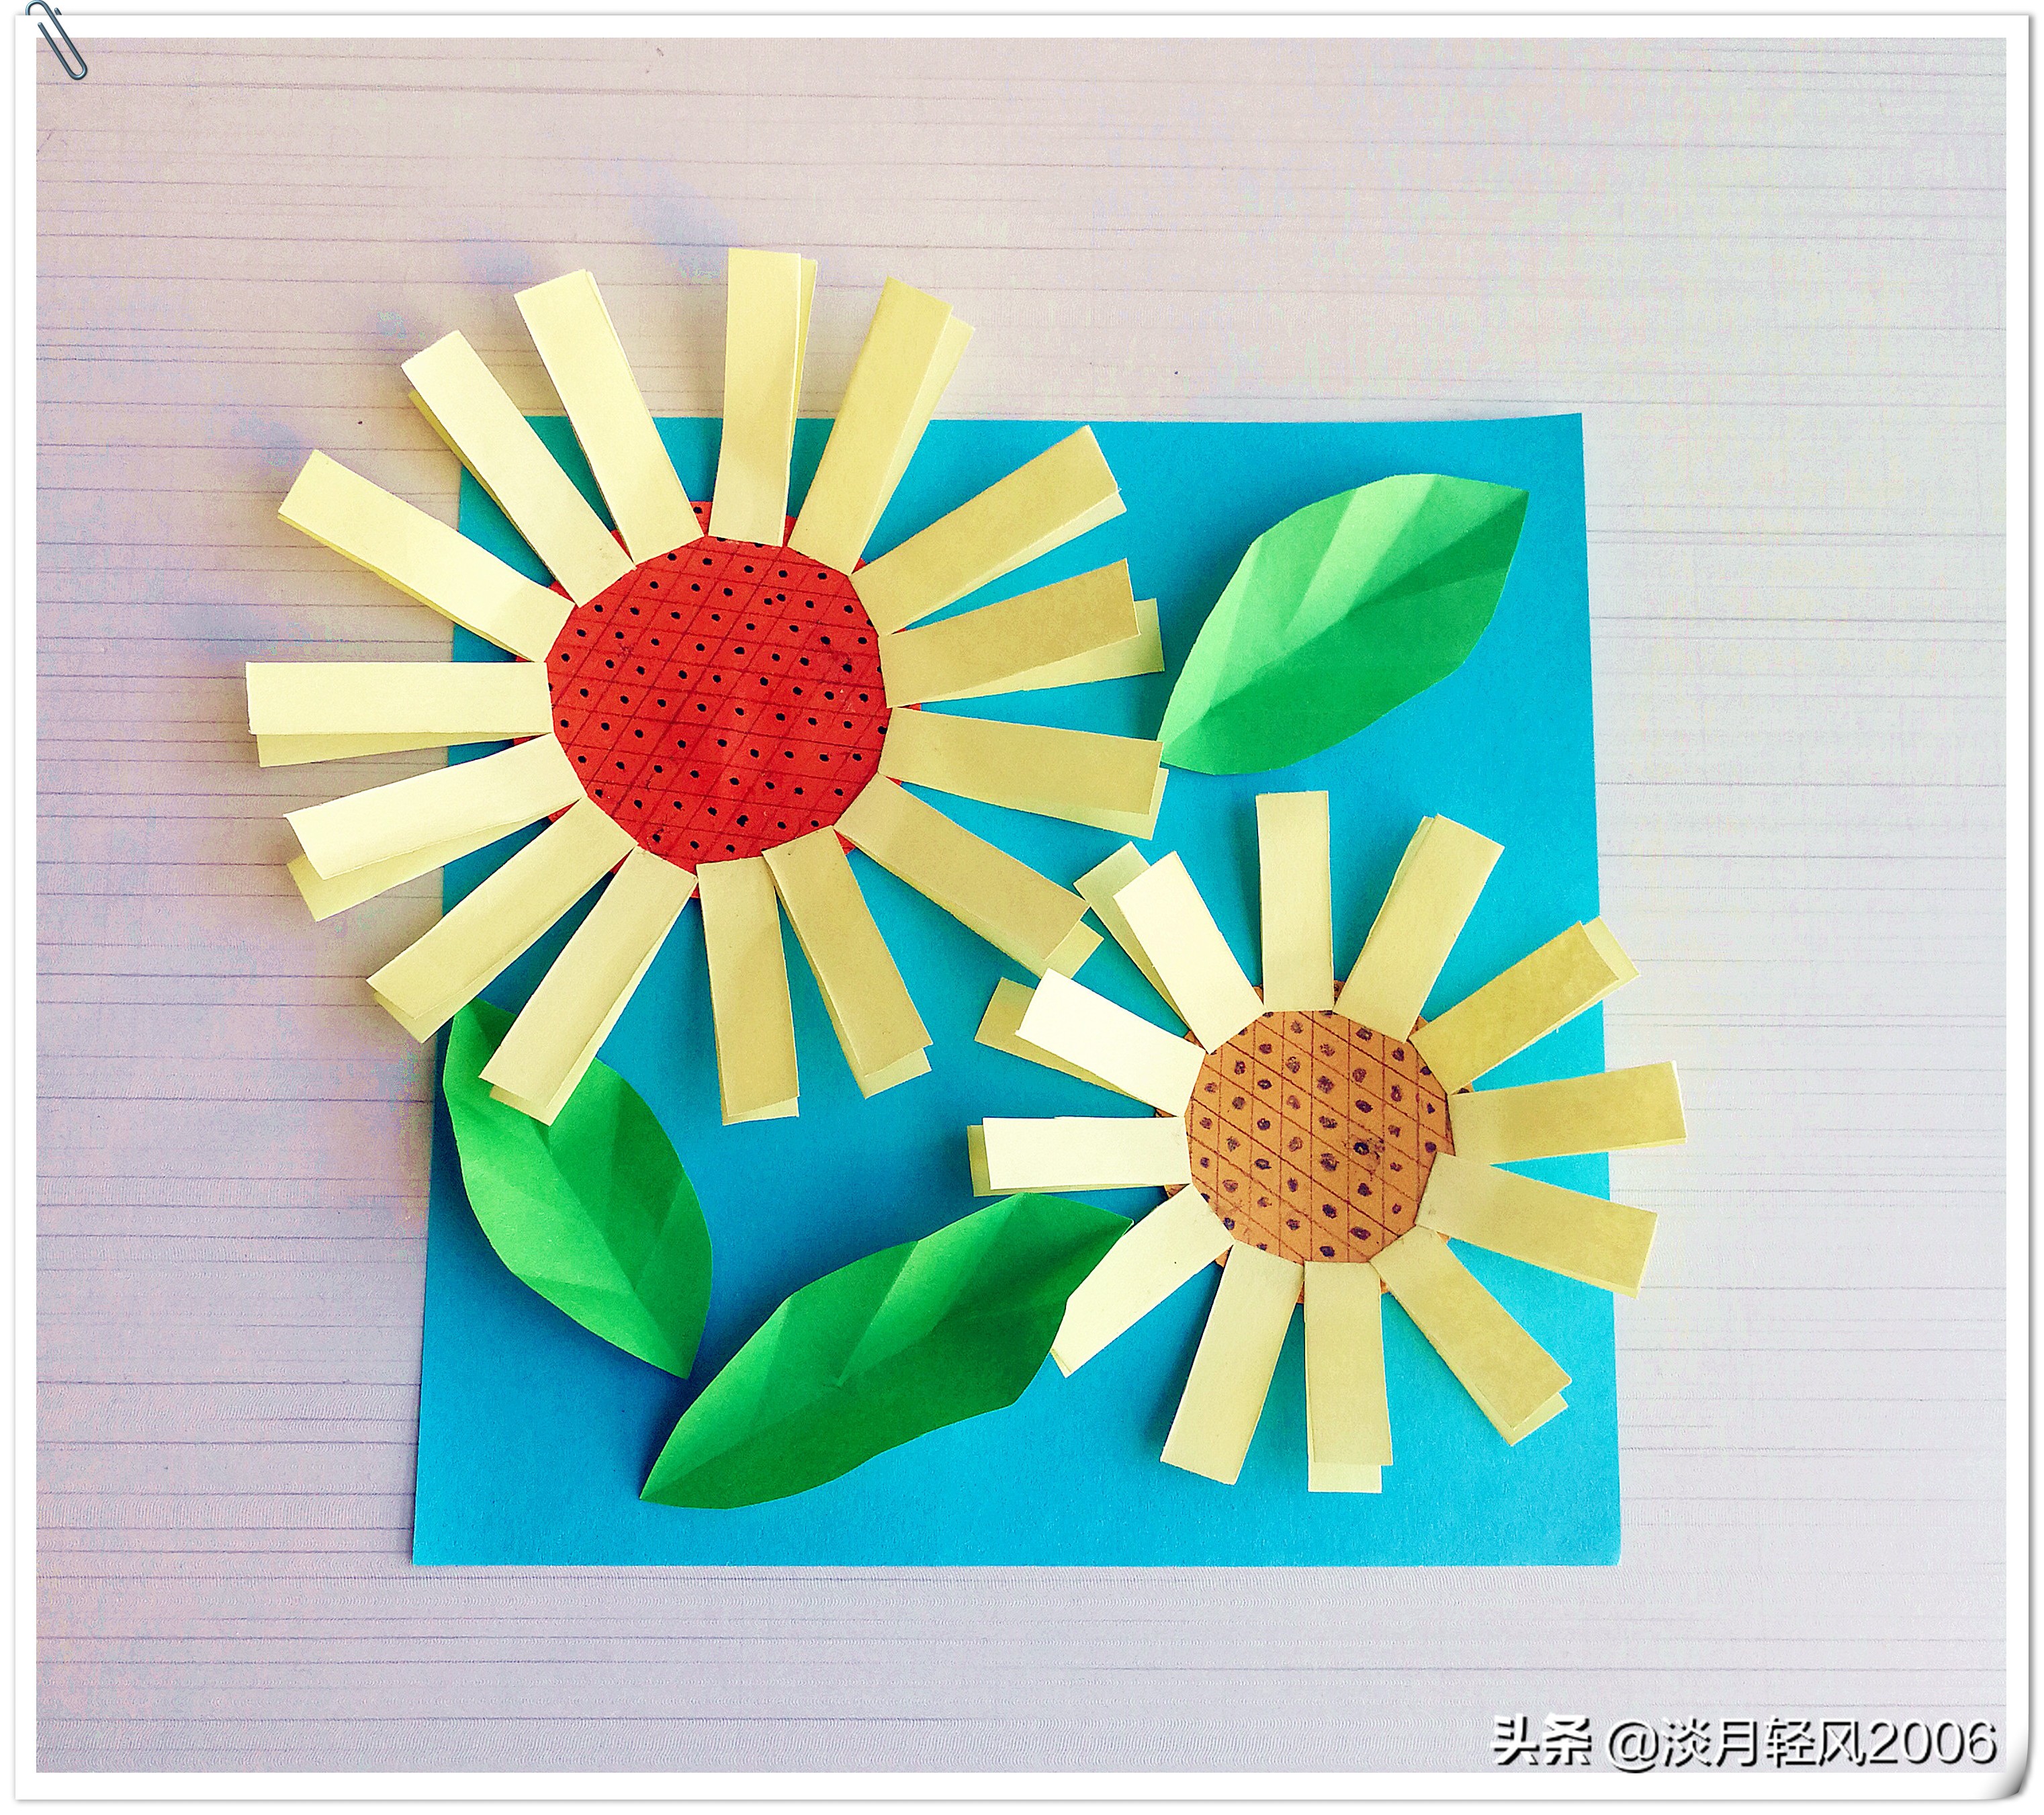 手工贴画制作简单漂亮,简单卡纸手工,用彩色卡纸粘贴向日葵,好学又